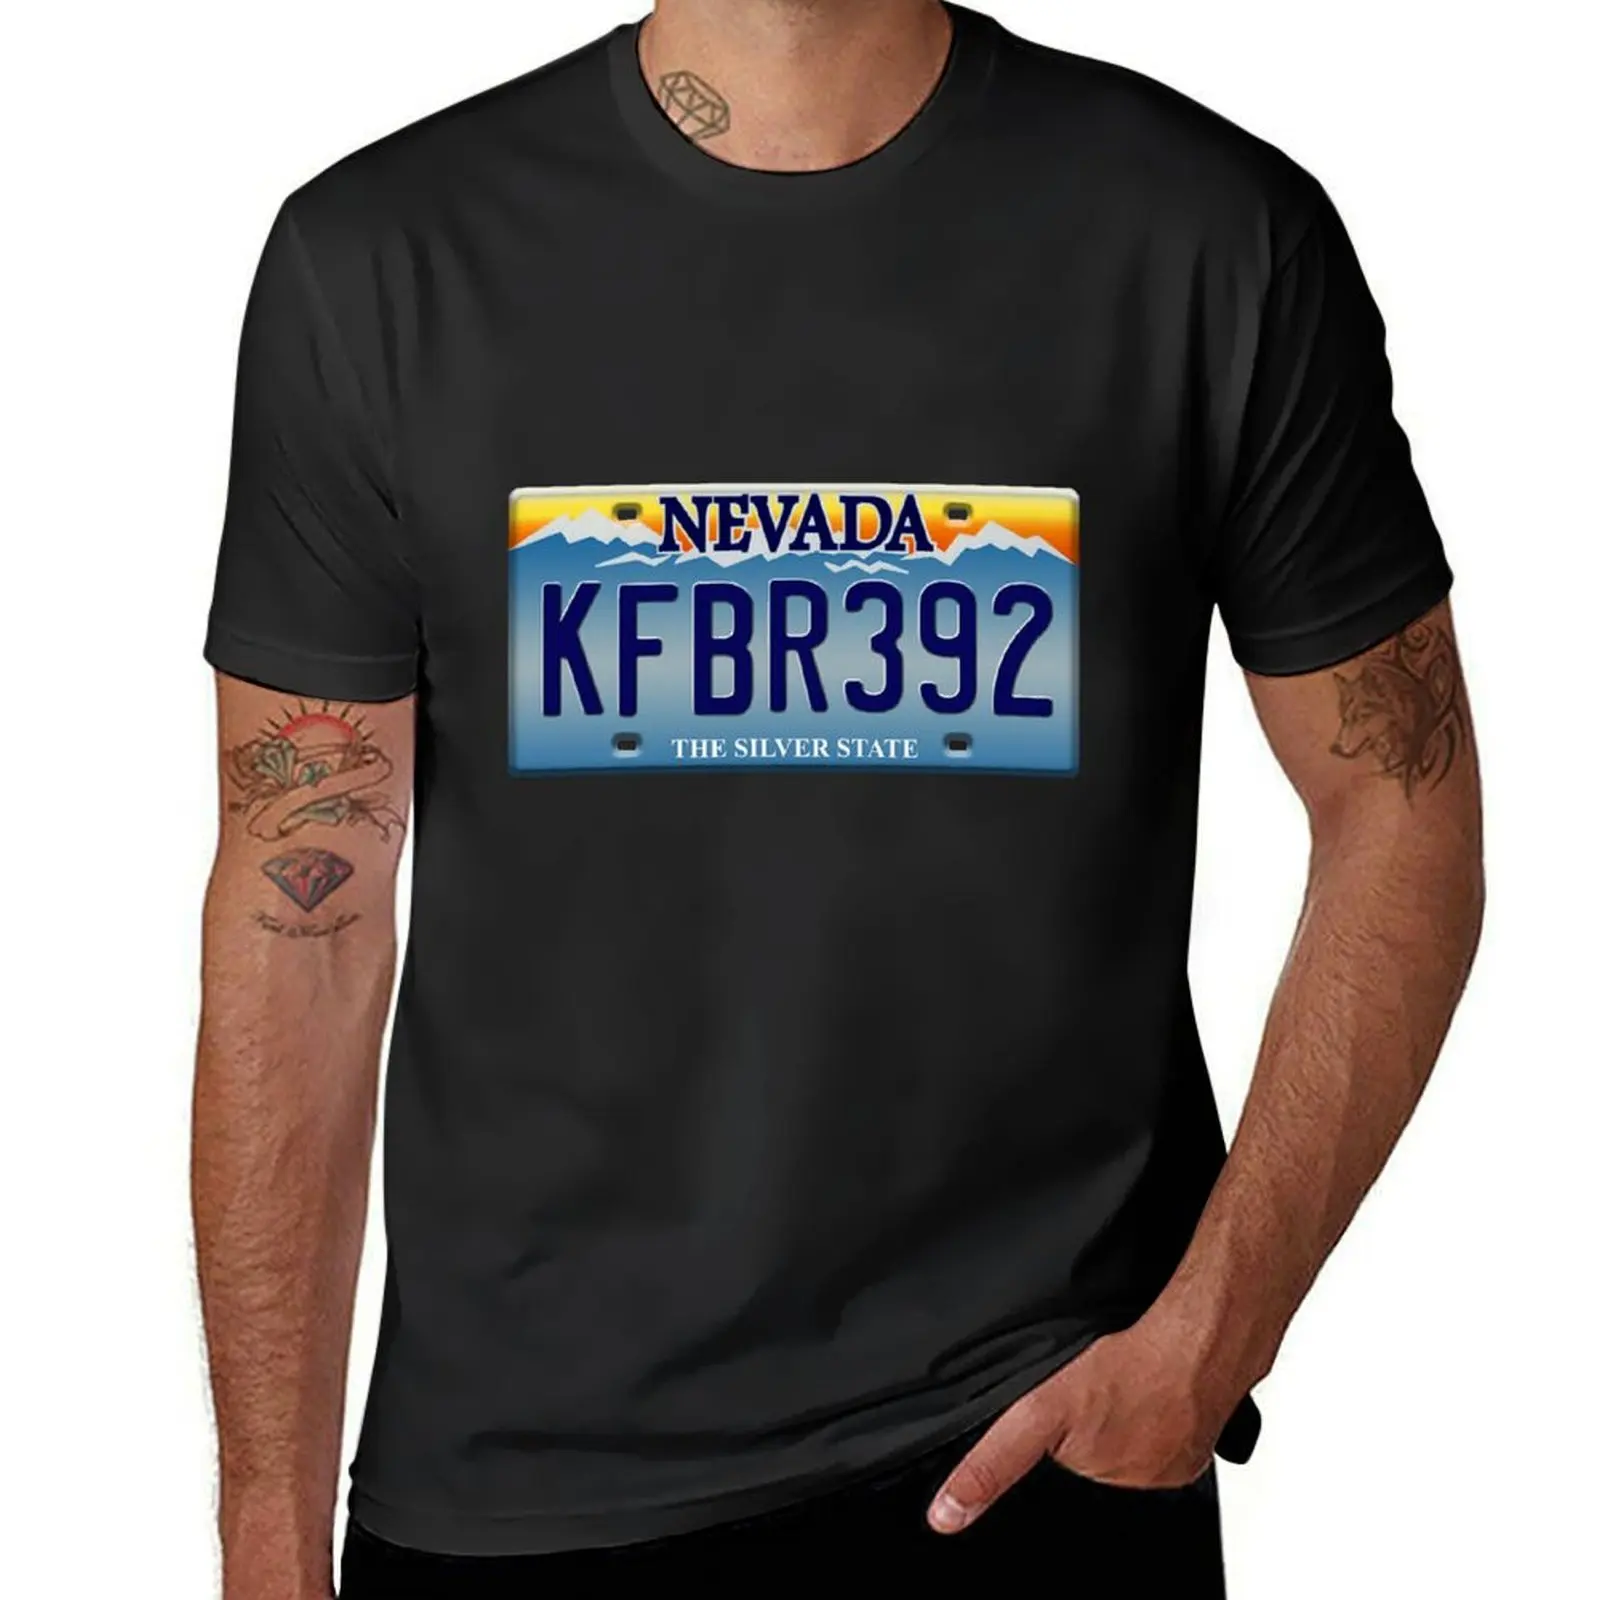 

KFBR392, футболка, новая версия, милые топы с графикой, мужские футболки больших размеров